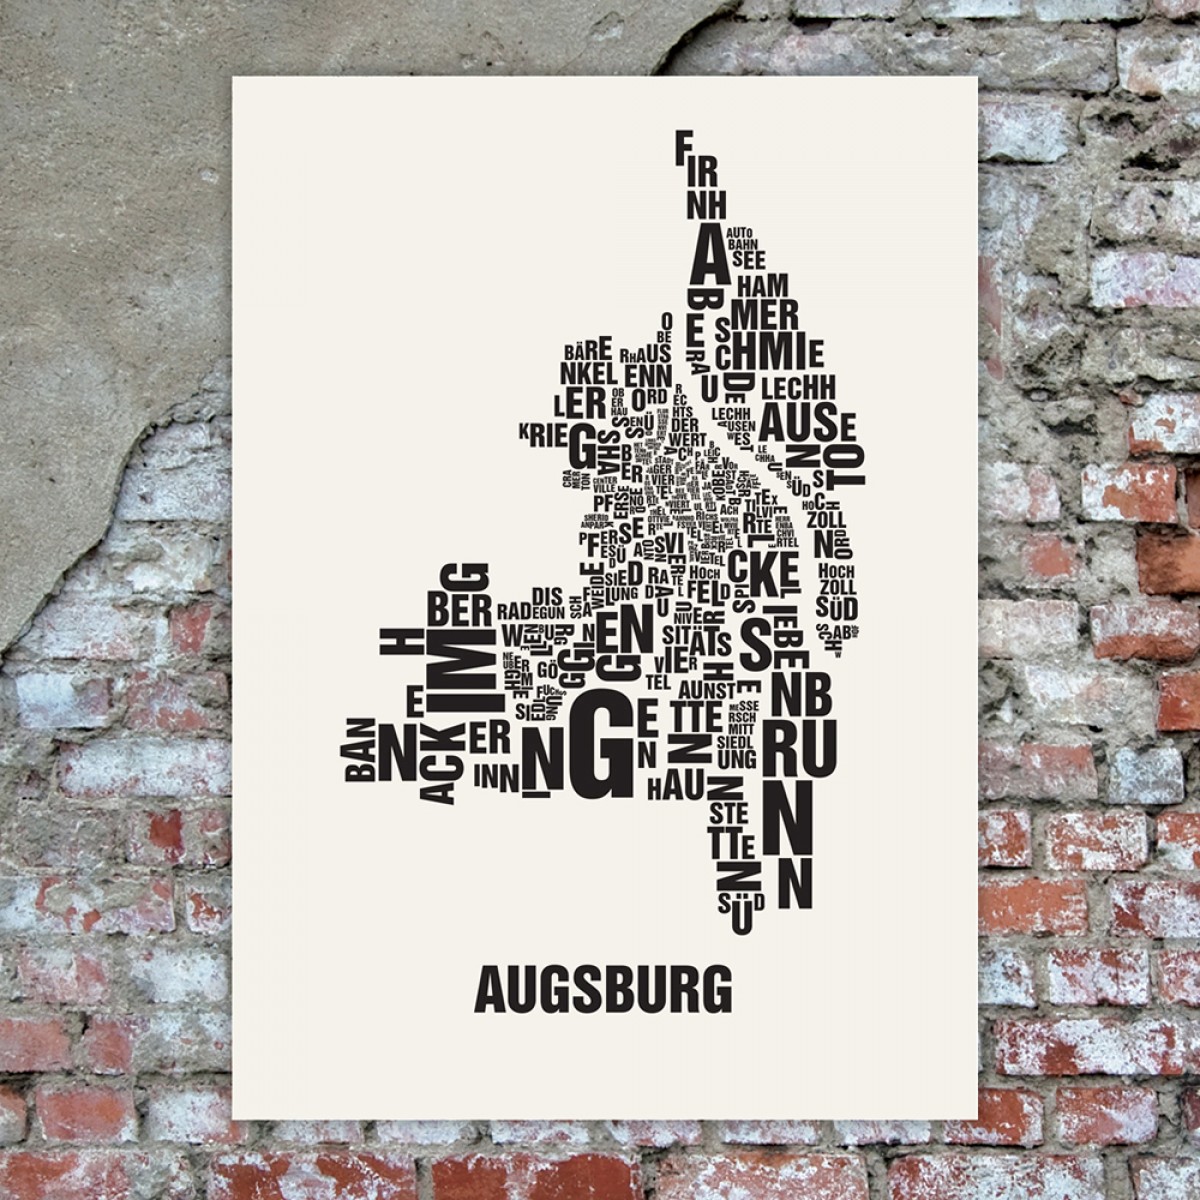 Buchstabenort Augsburg Poster Typografie Siebdruck